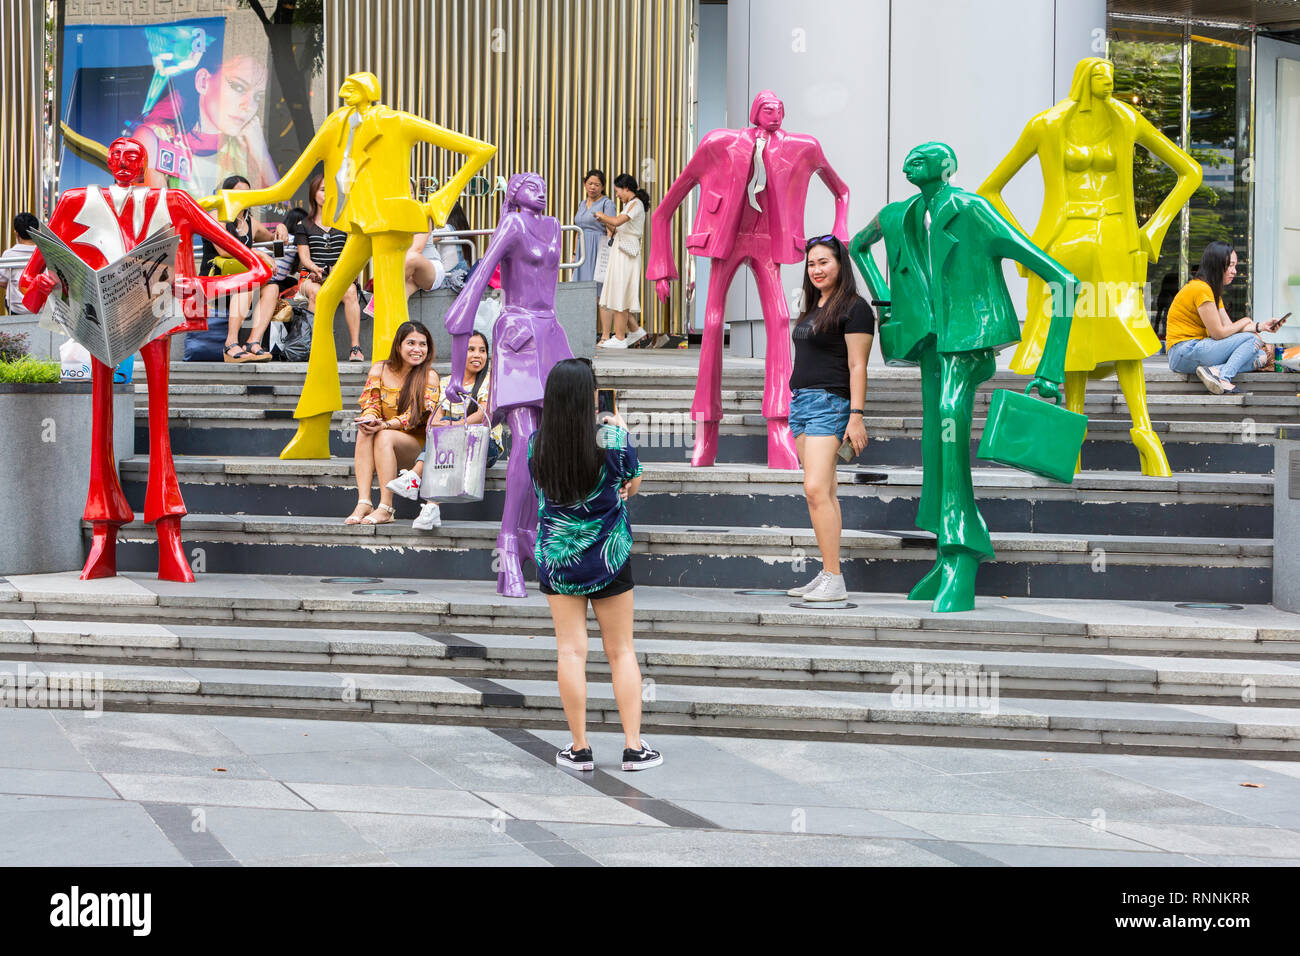 Käufer machen Fotos von modernen Skulpturen außerhalb ION Mall, von Singapur, der Orchard Road Street Scene. Städtische Bevölkerung von Kurt Lorenz Metzler. Stockfoto